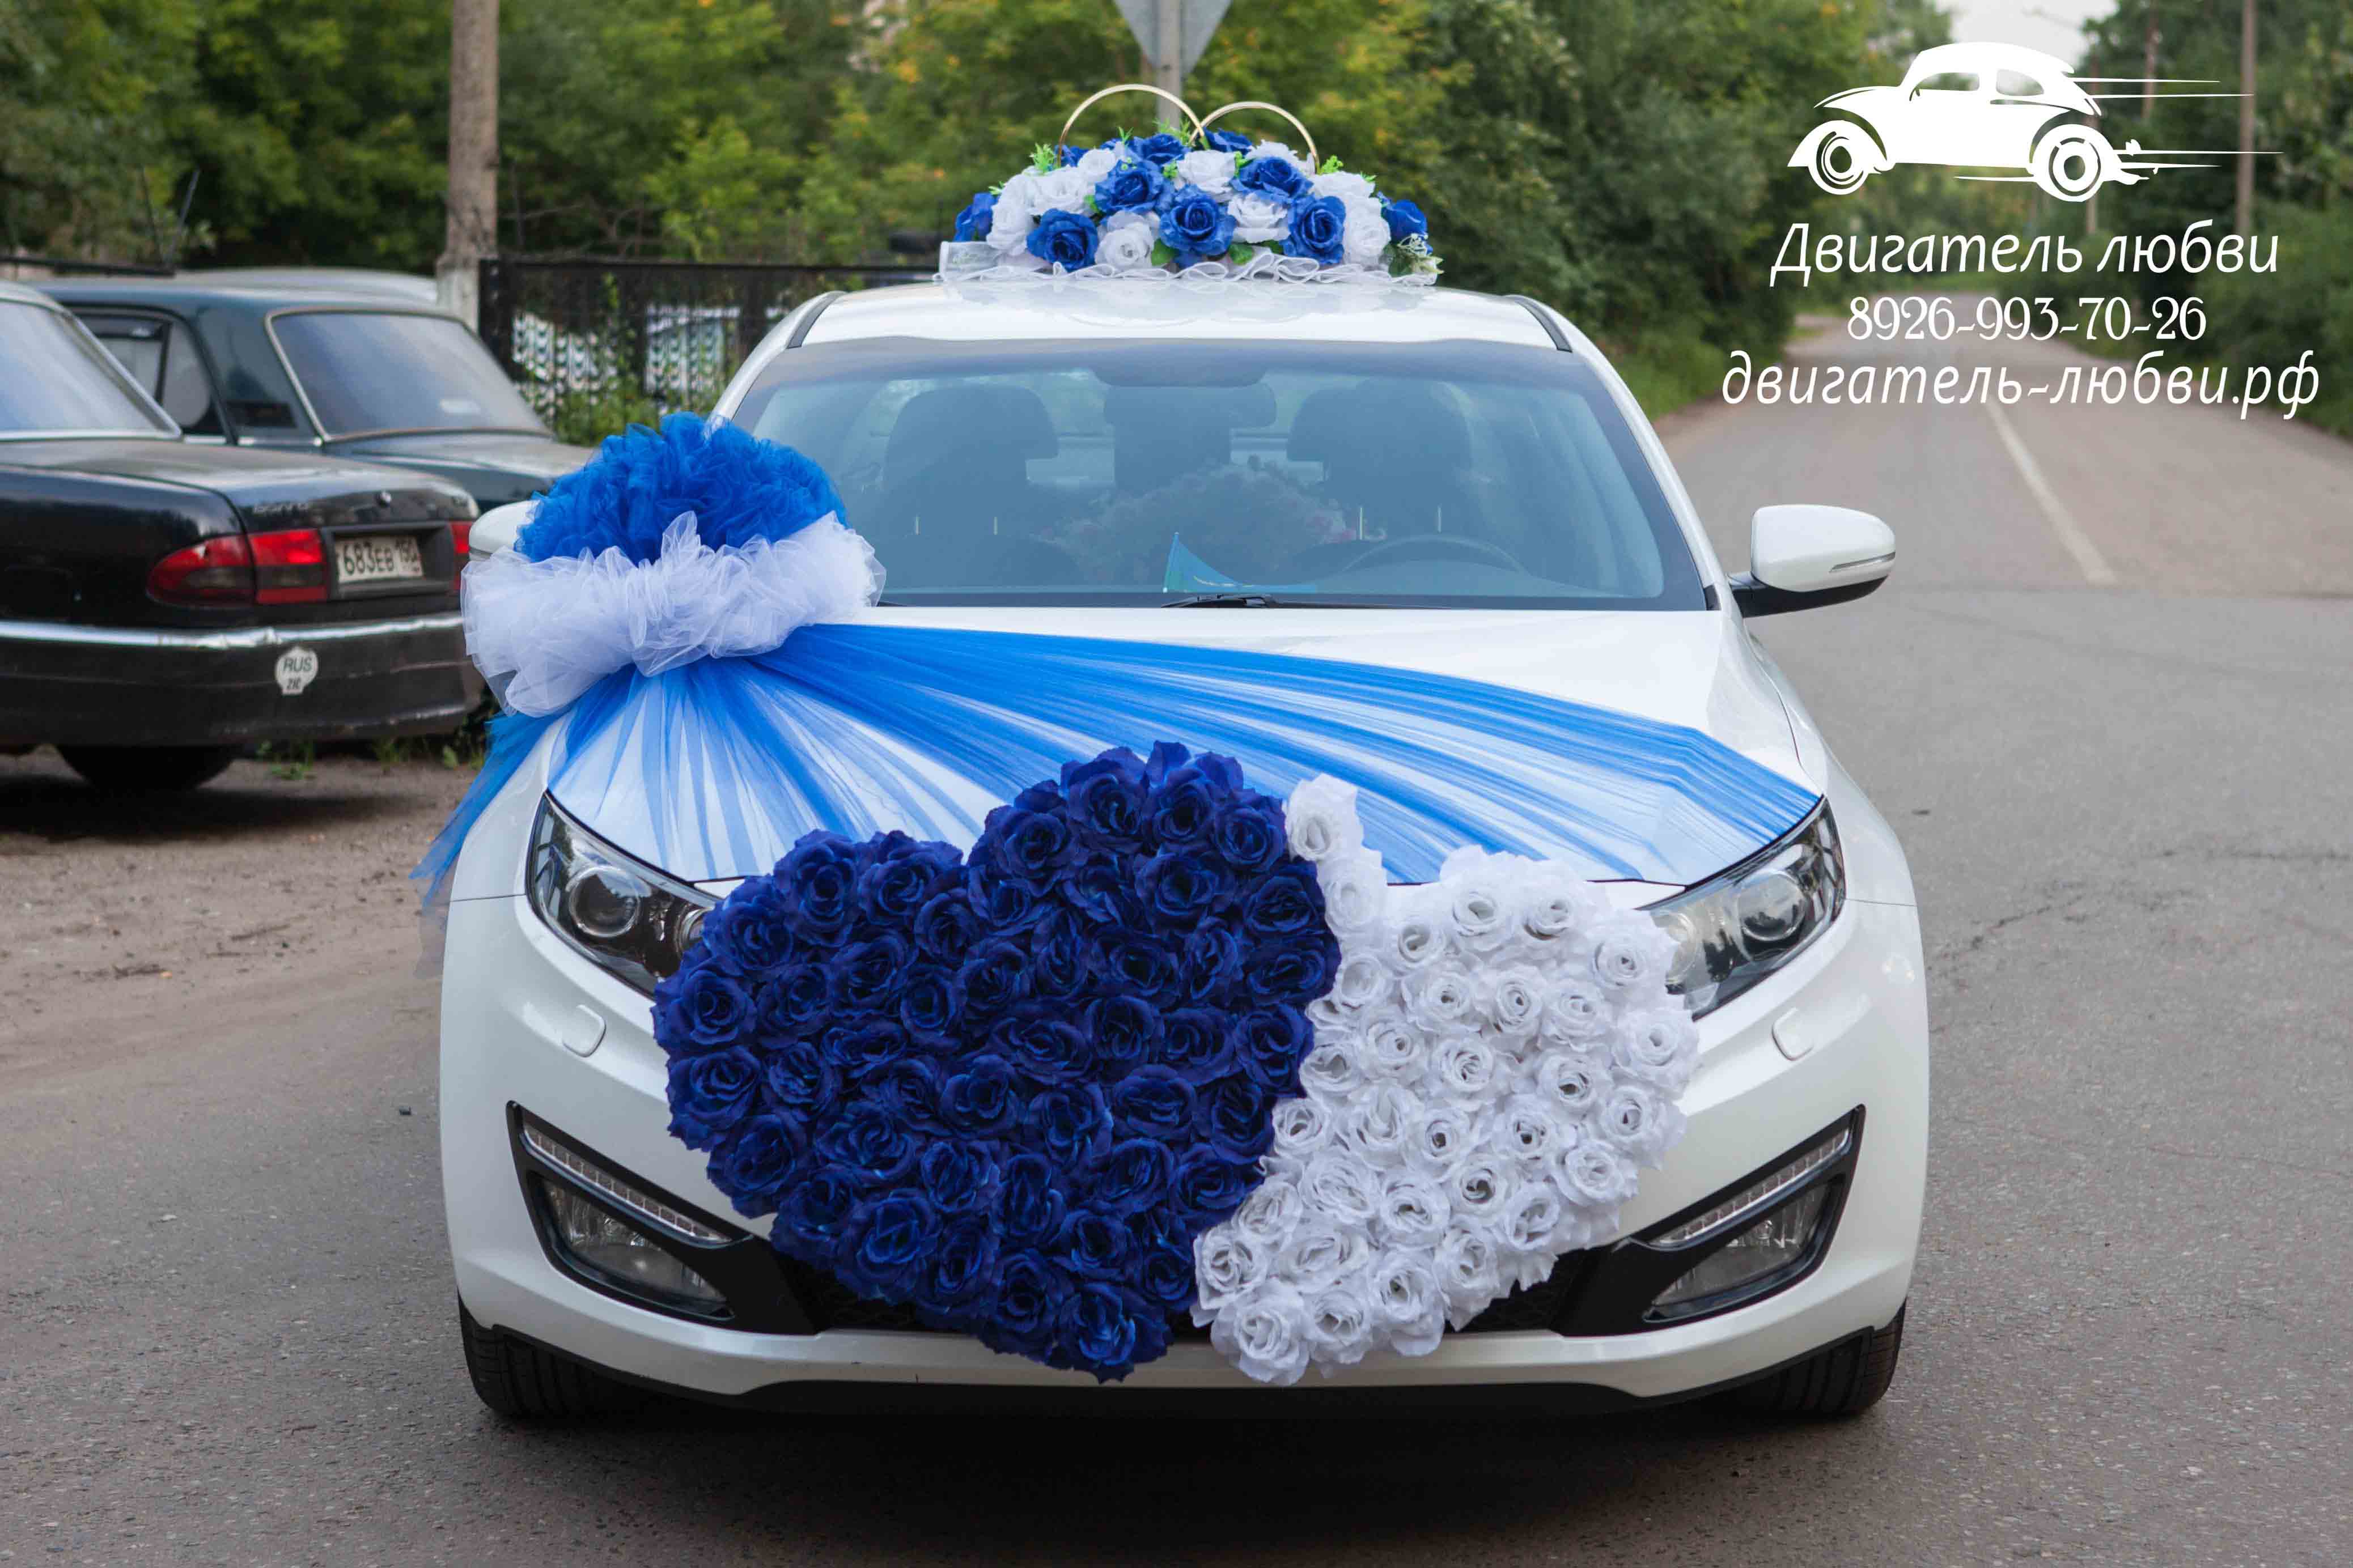 Украшение свадебной машины в синем цвете